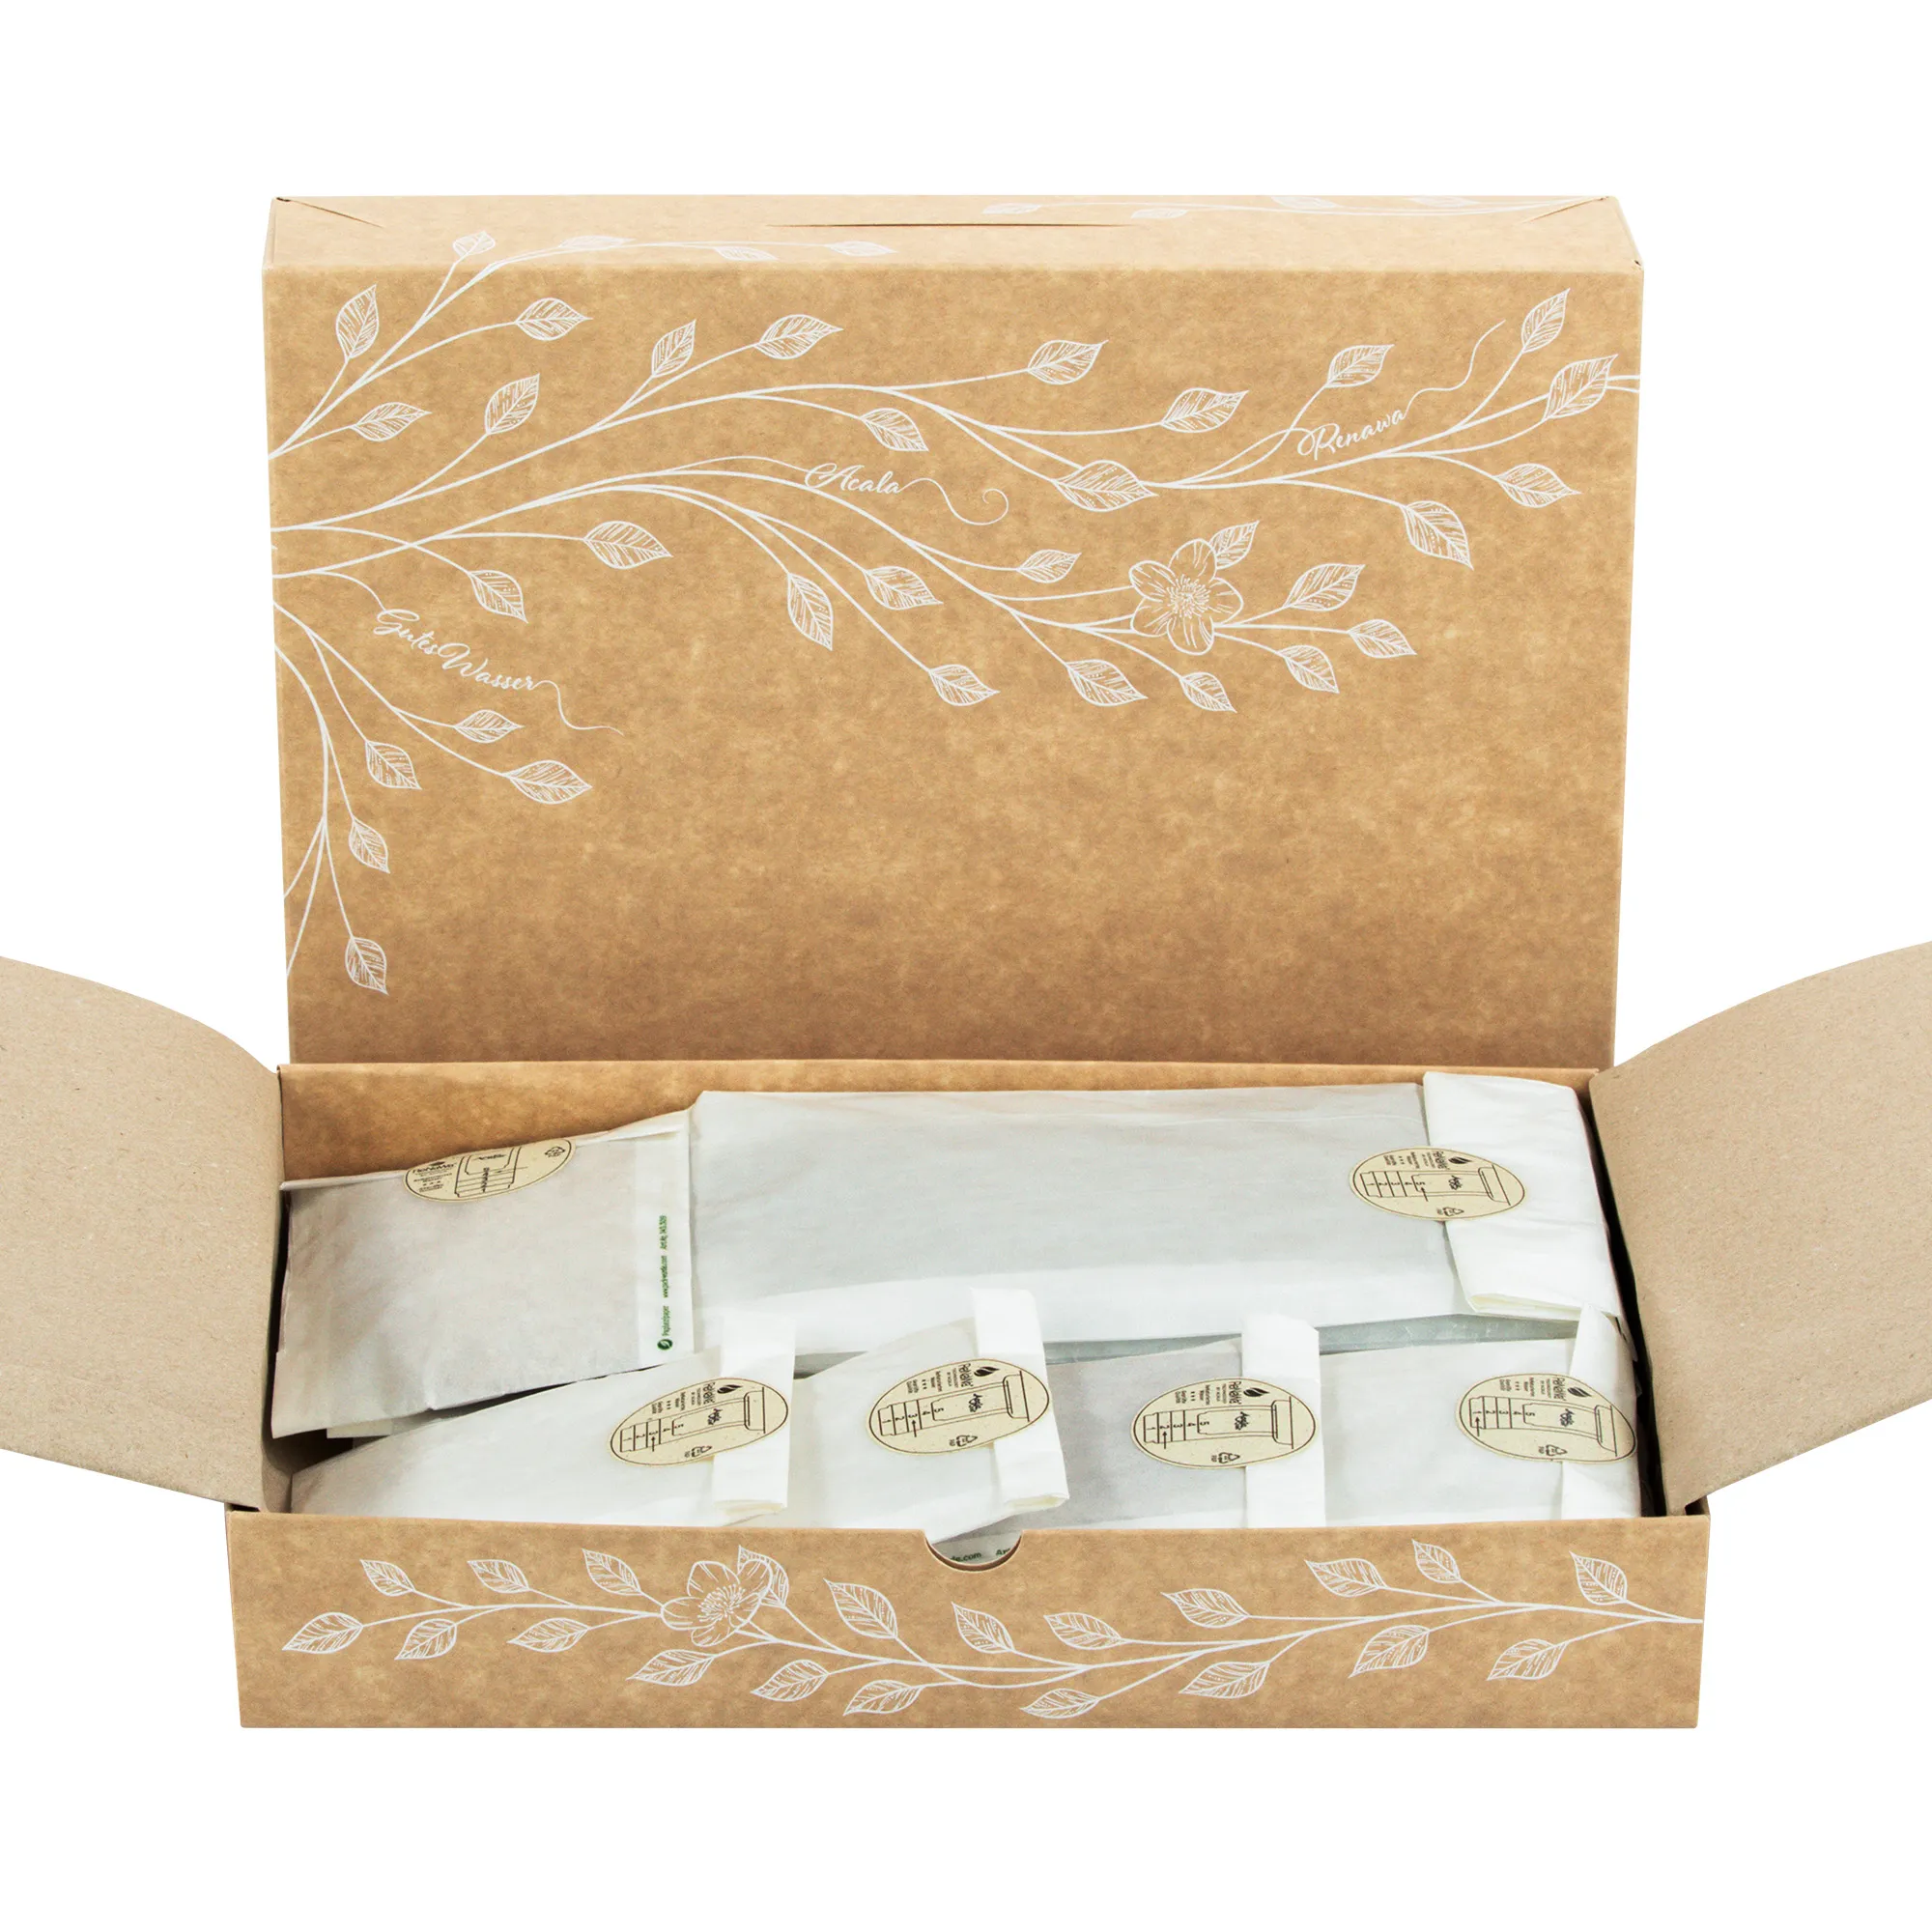 Man sieht die Verpackung für die ReNaWa Nachfüll-Komponenten für 1 Jahr. Der Karton ist Naturbraun, bedruckt mit weißen Blätterranken und Infos zum Inhalt. Die Schublade befindet sich vor dem Karton, man schaut auf weiße, gefüllte Beutel.